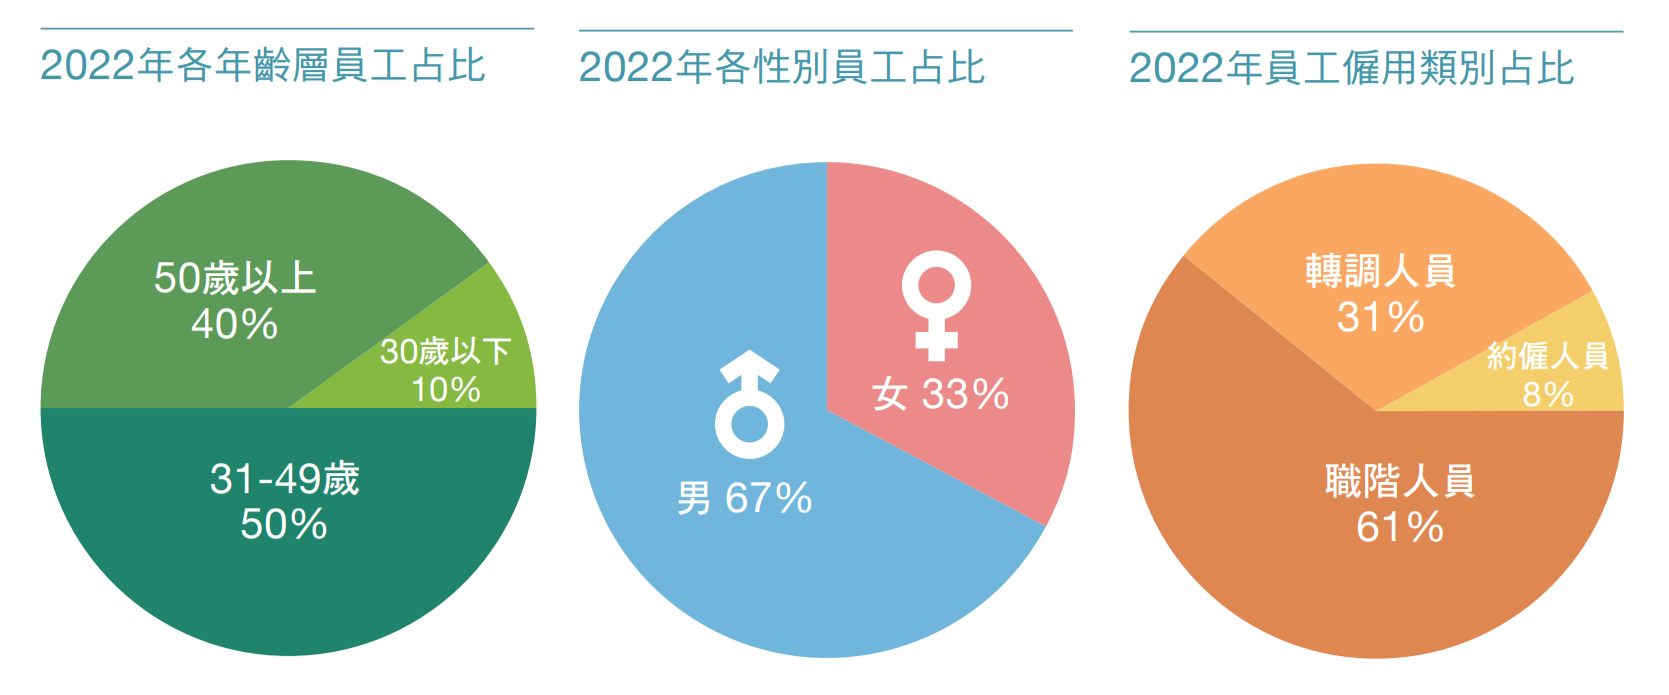 2022年員工年齡、性別及僱用類別占比